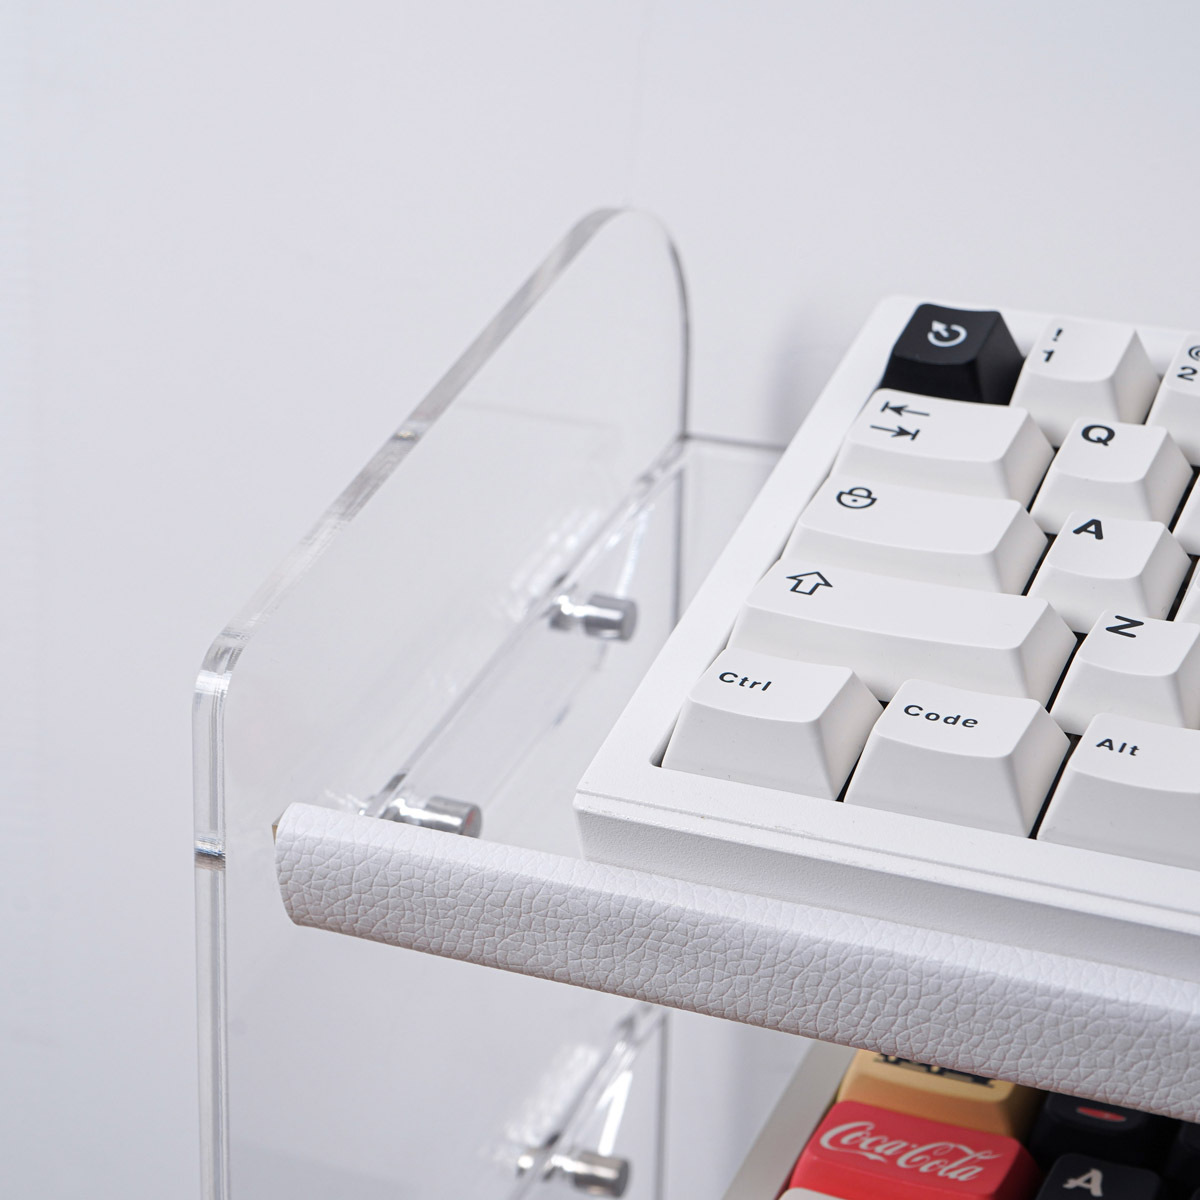 Bandeja teclado extensible – acrylic